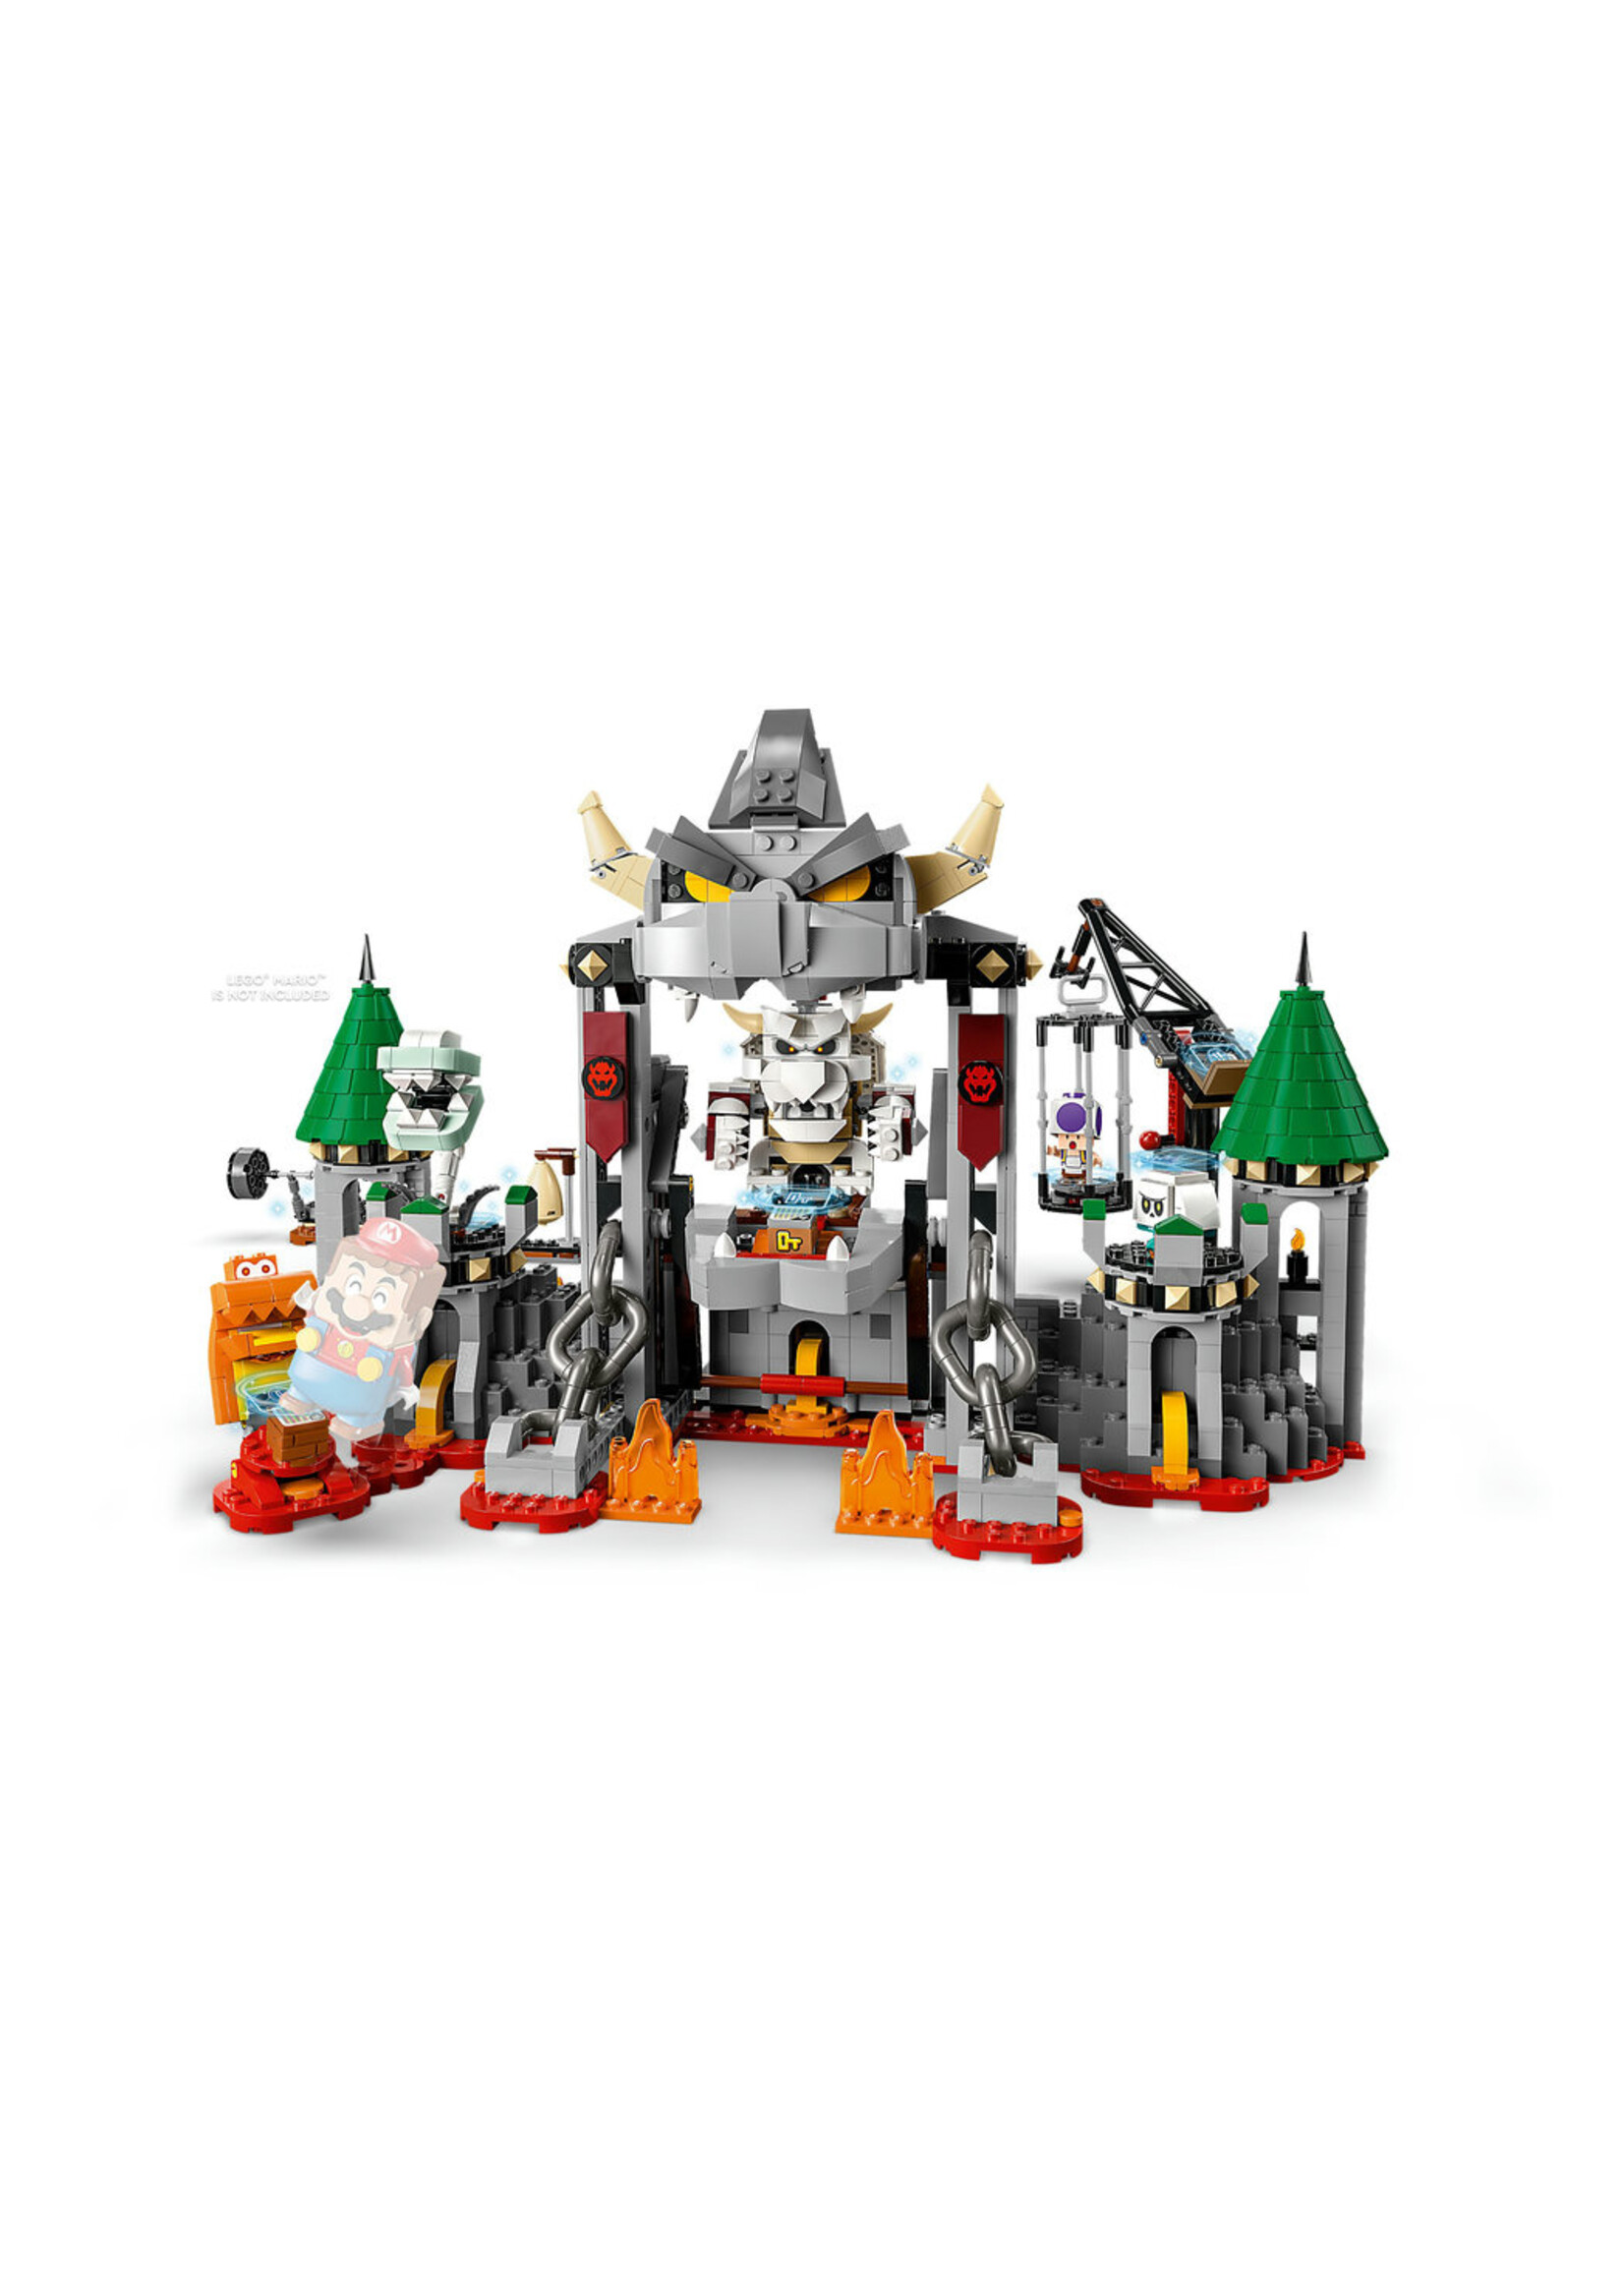 LEGO 71423 - Dry Bowser Castle Battle Expansion Set